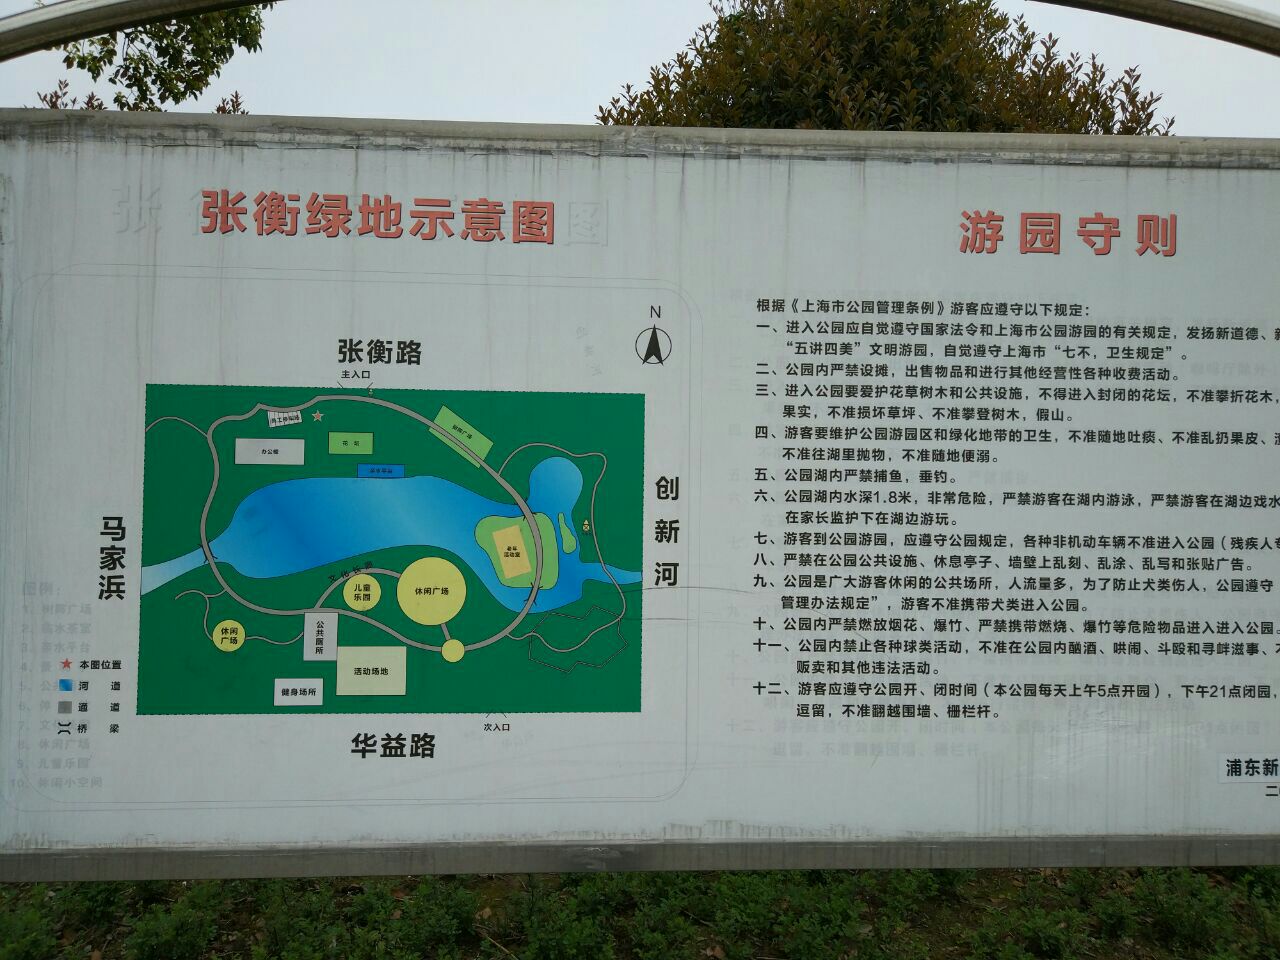 上海张衡公园好玩吗,上海张衡公园景点怎么样_点评_评价【携程攻略】